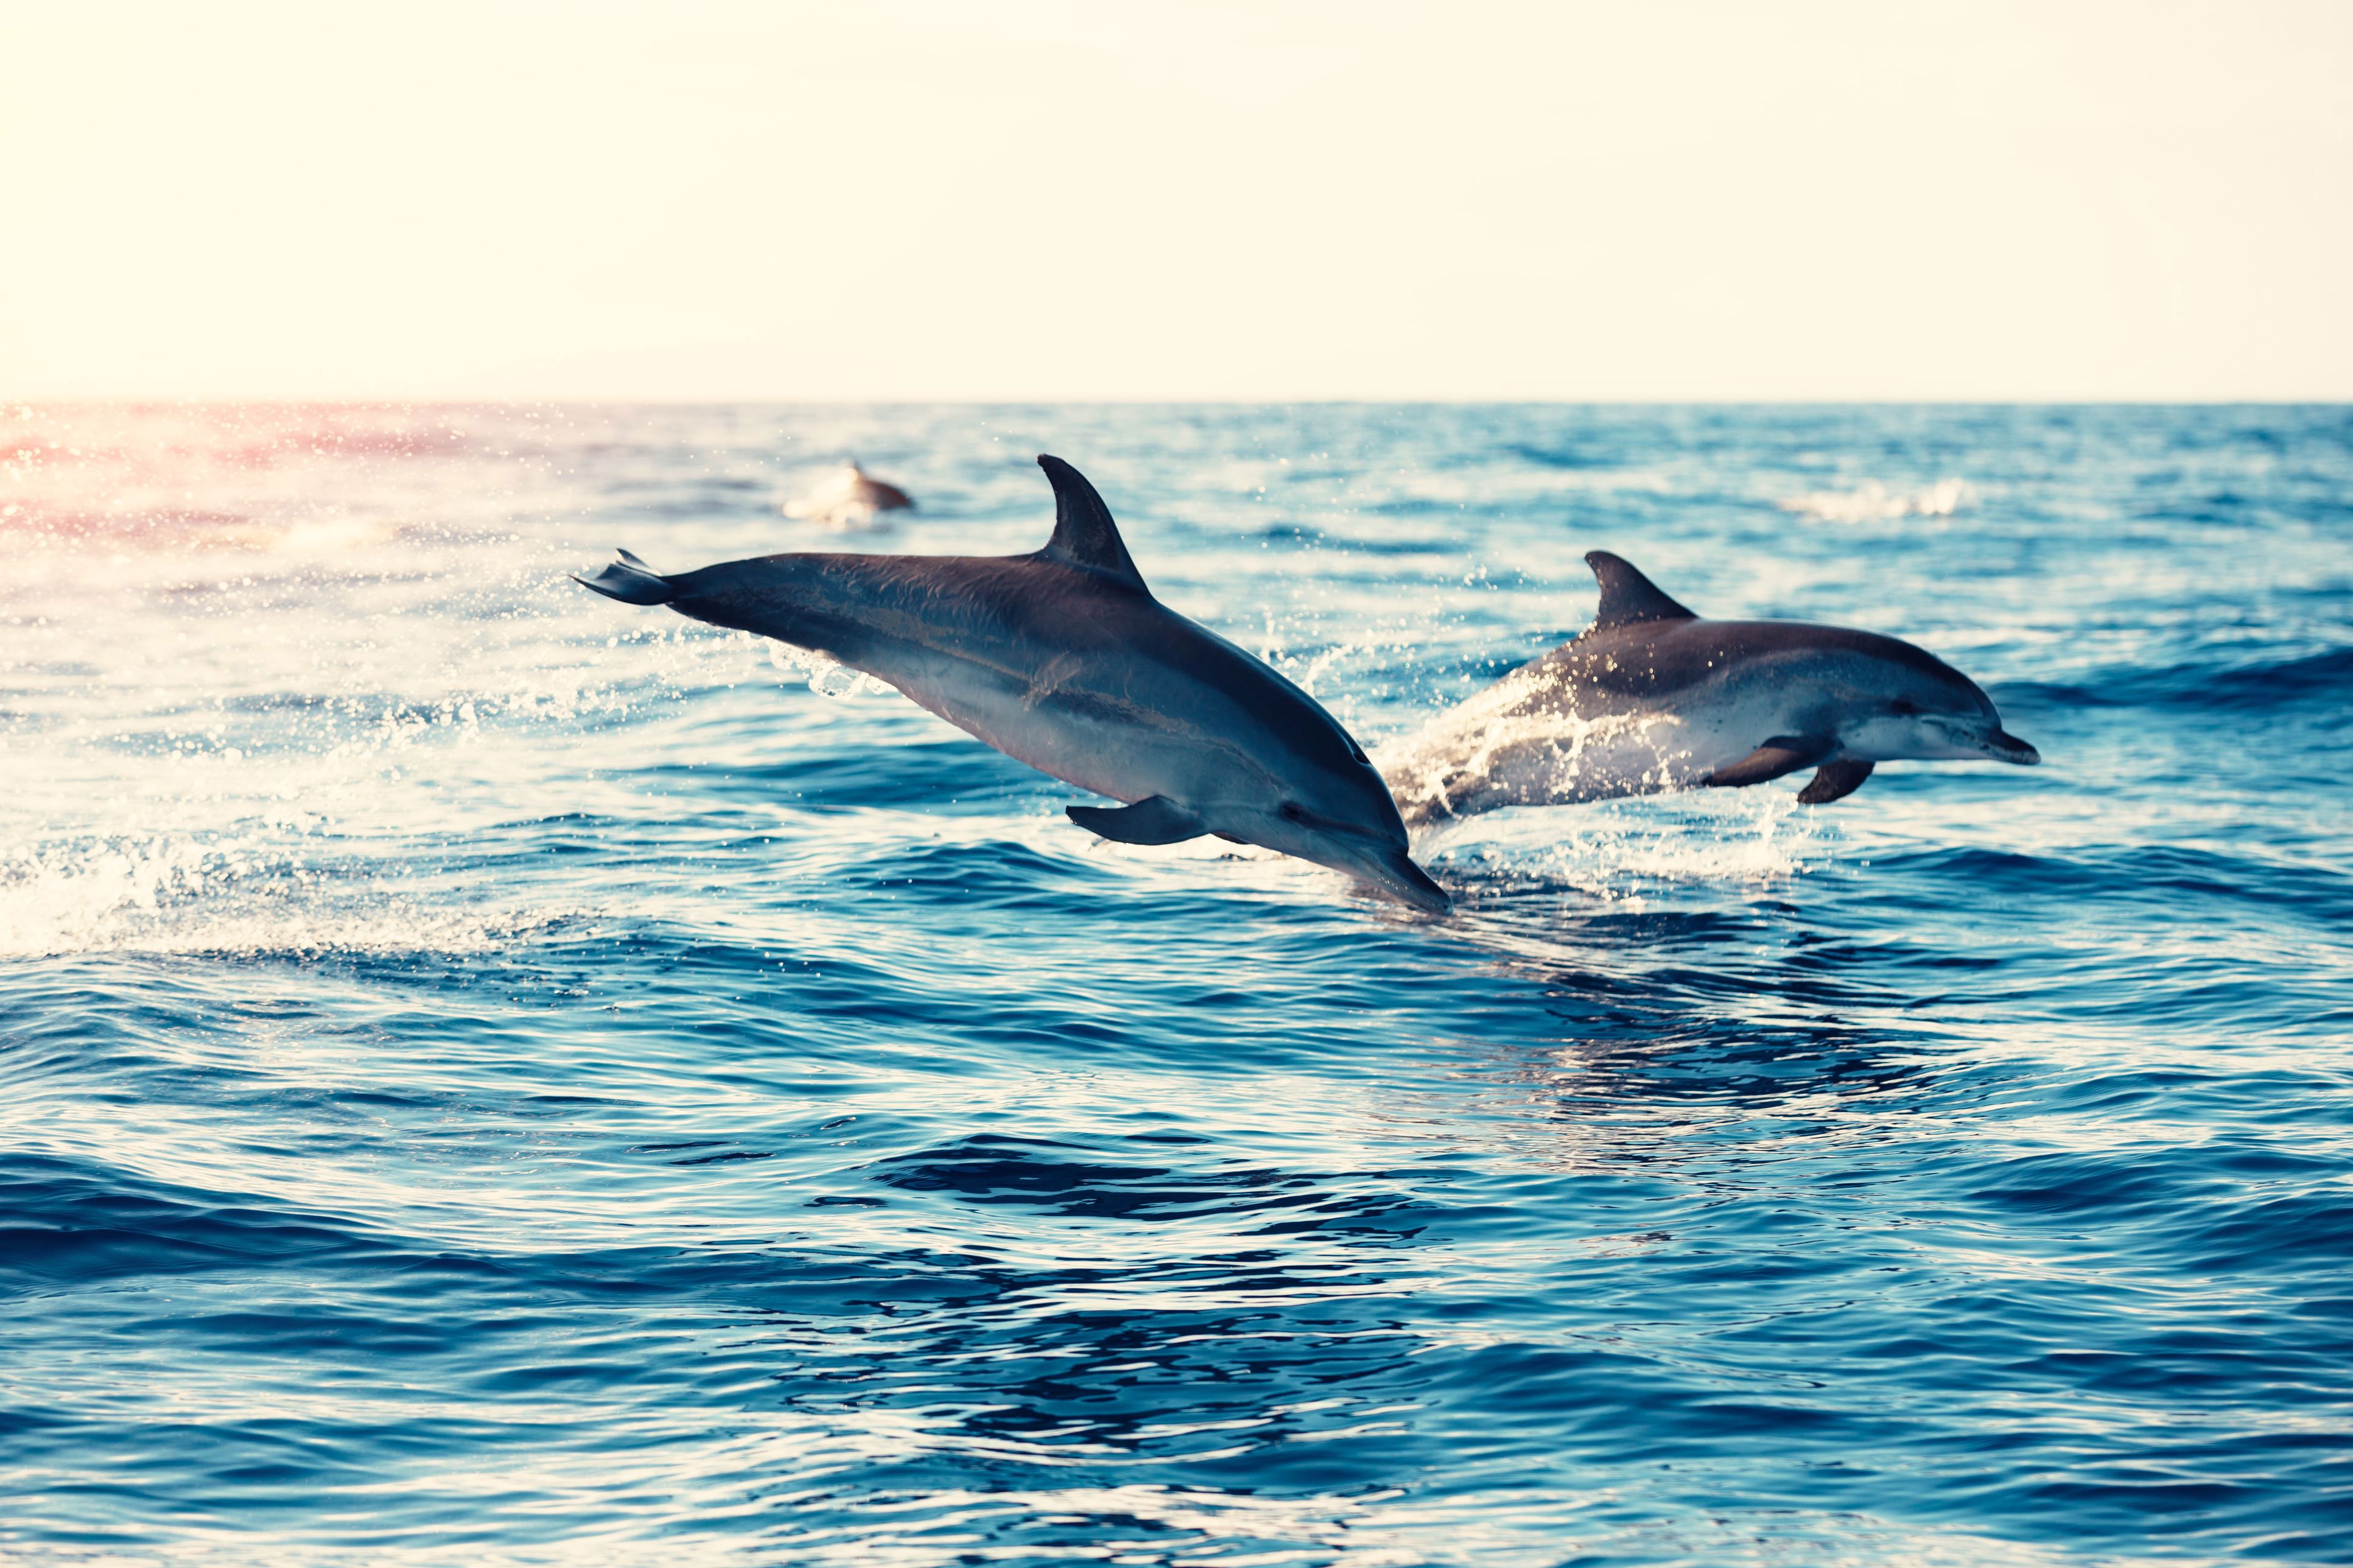 Dolphin spotting in the Algarve